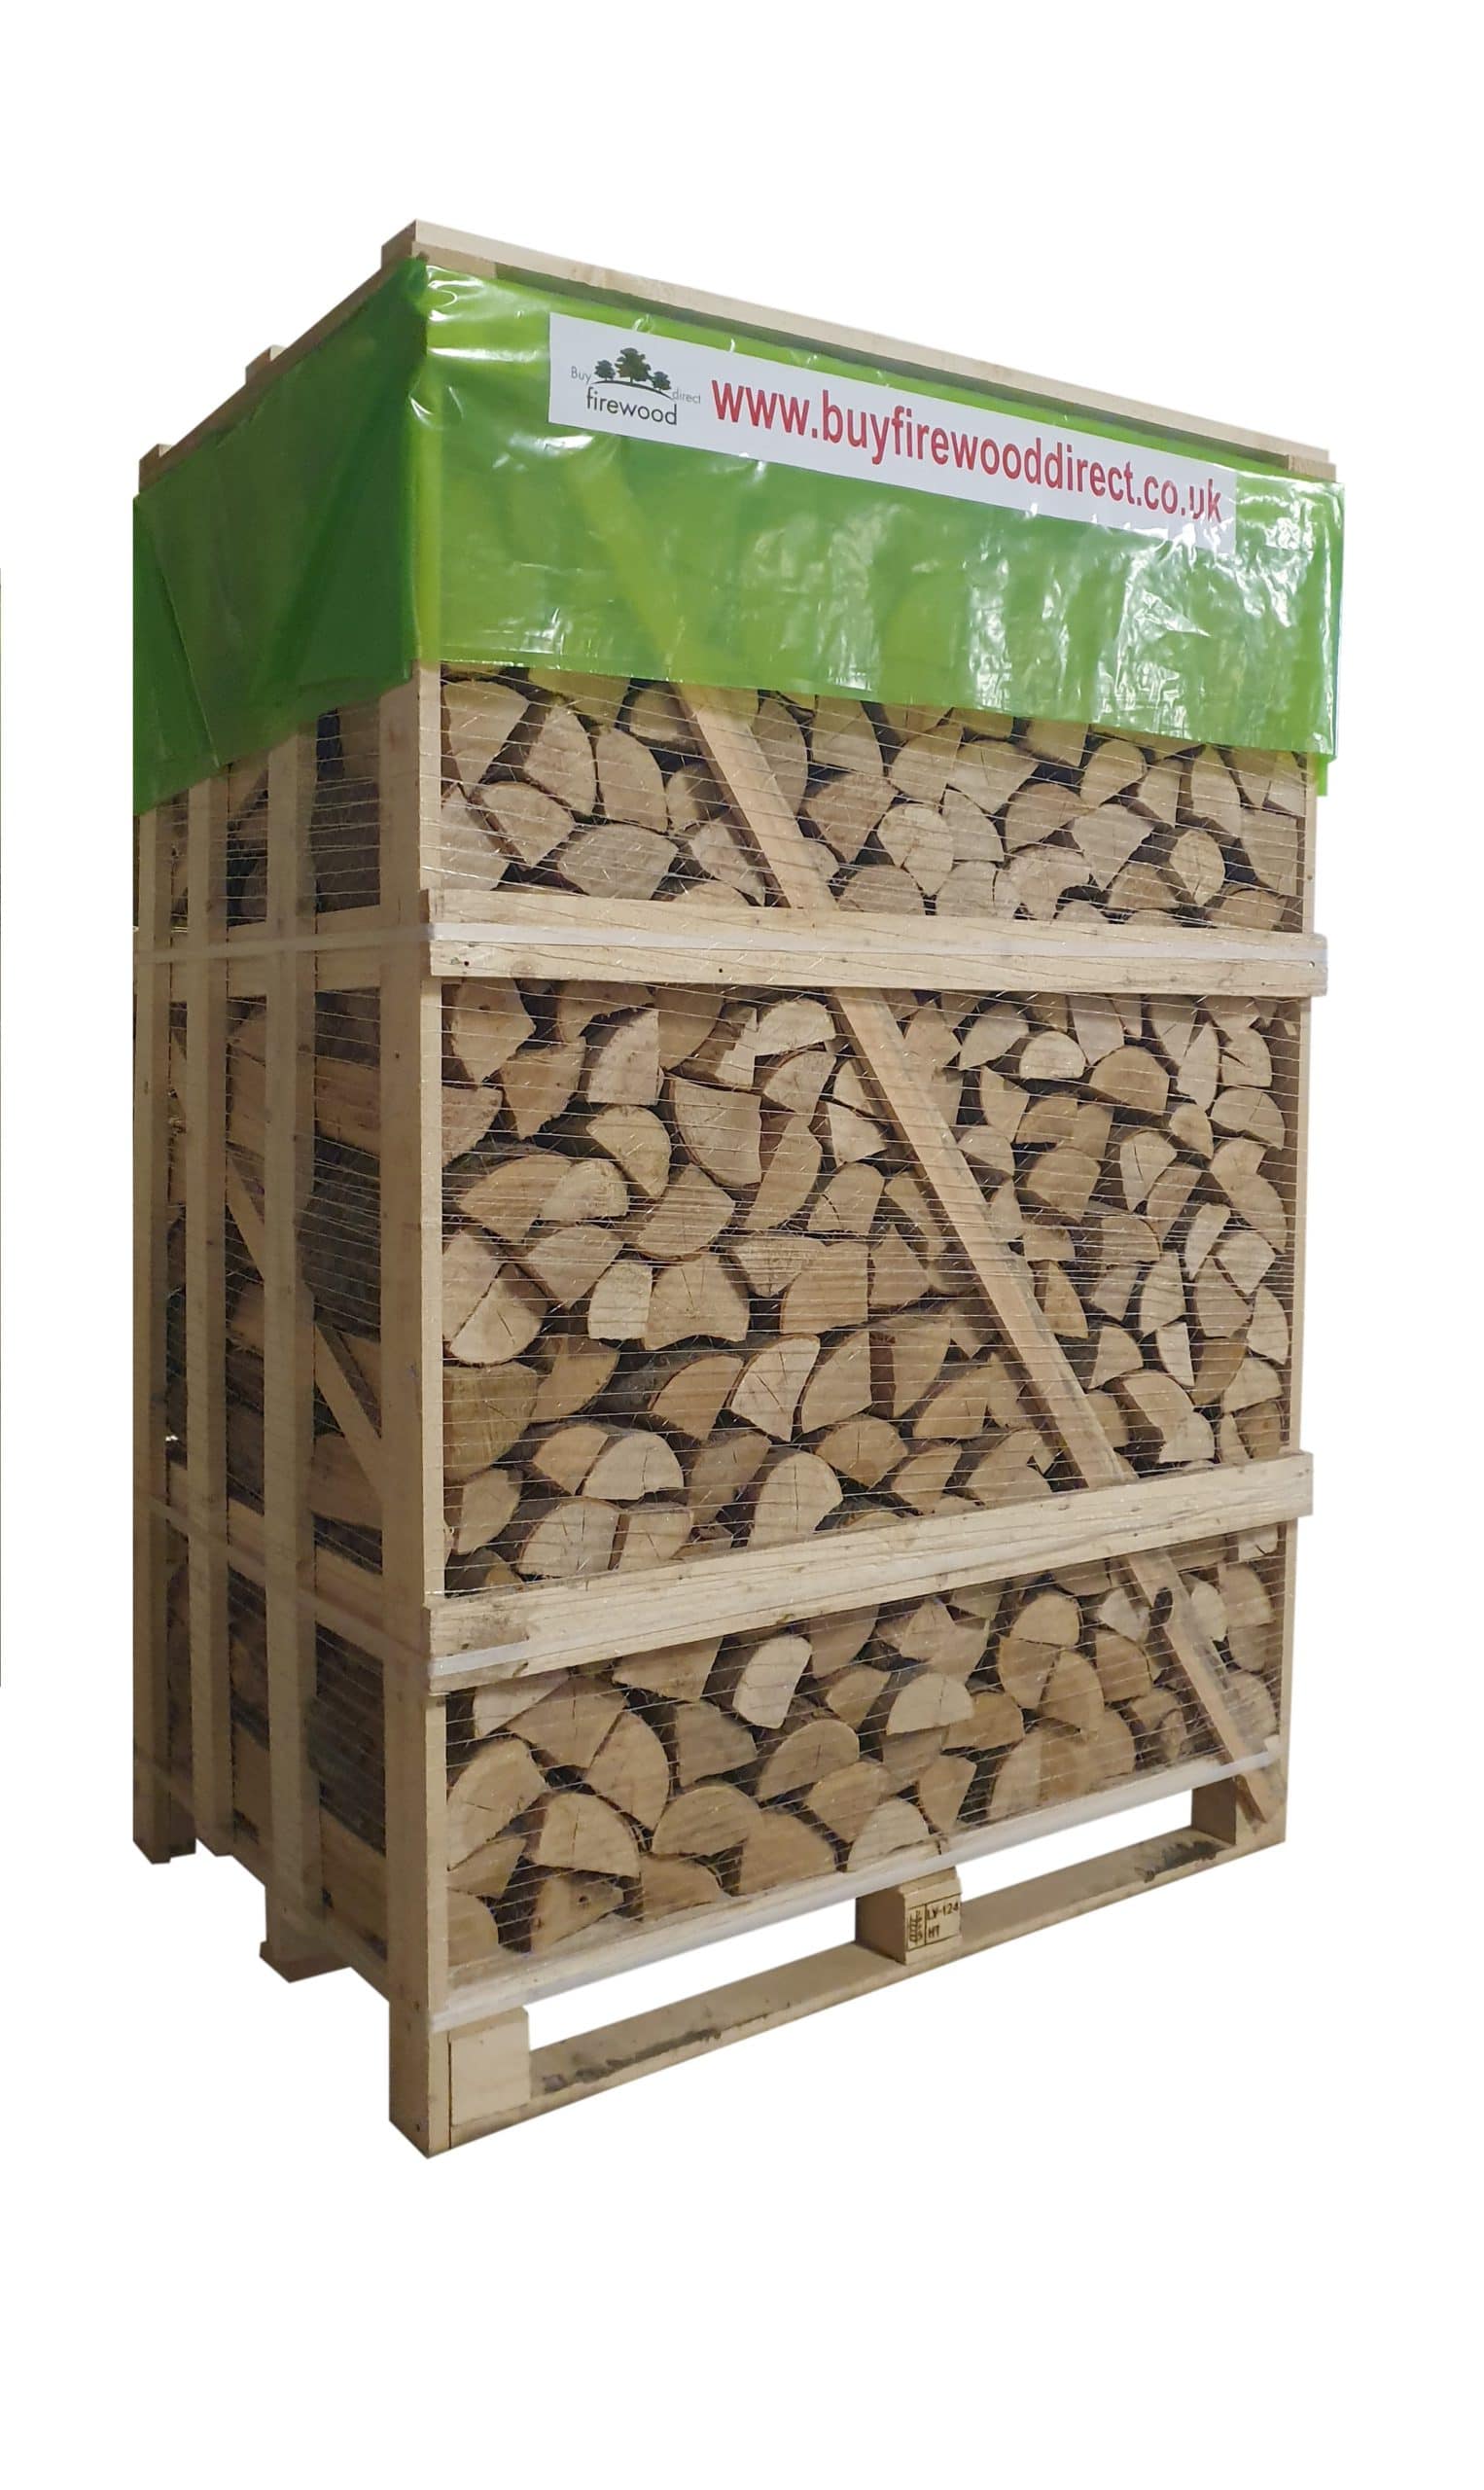 Logs for sale St Albans, order firewood online.